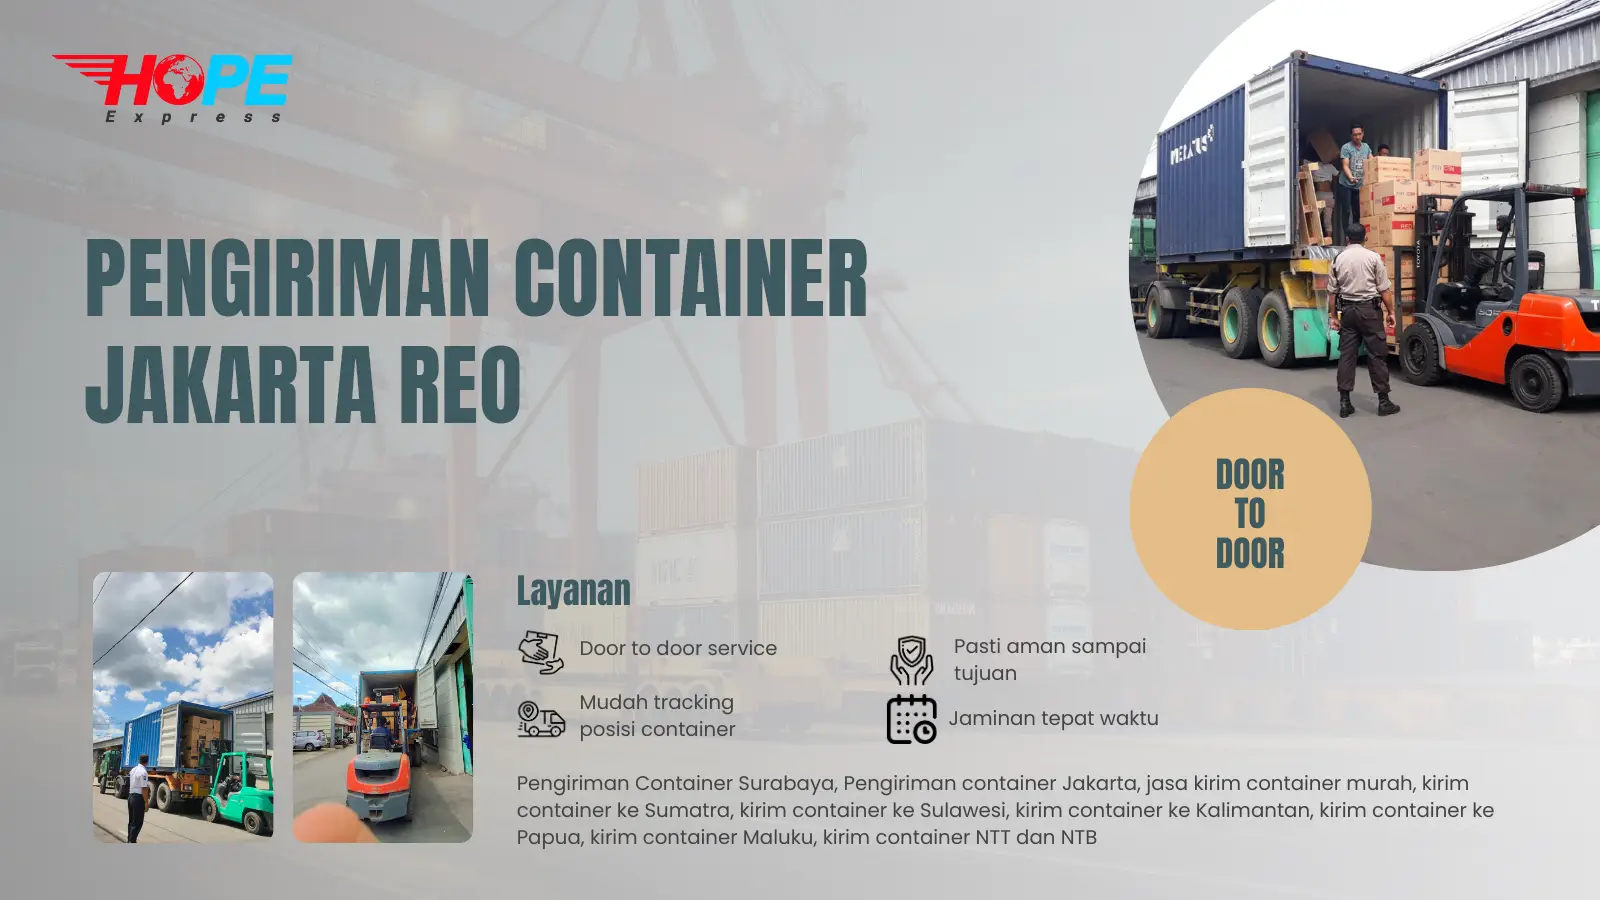 Pengiriman Container Jakarta Reo